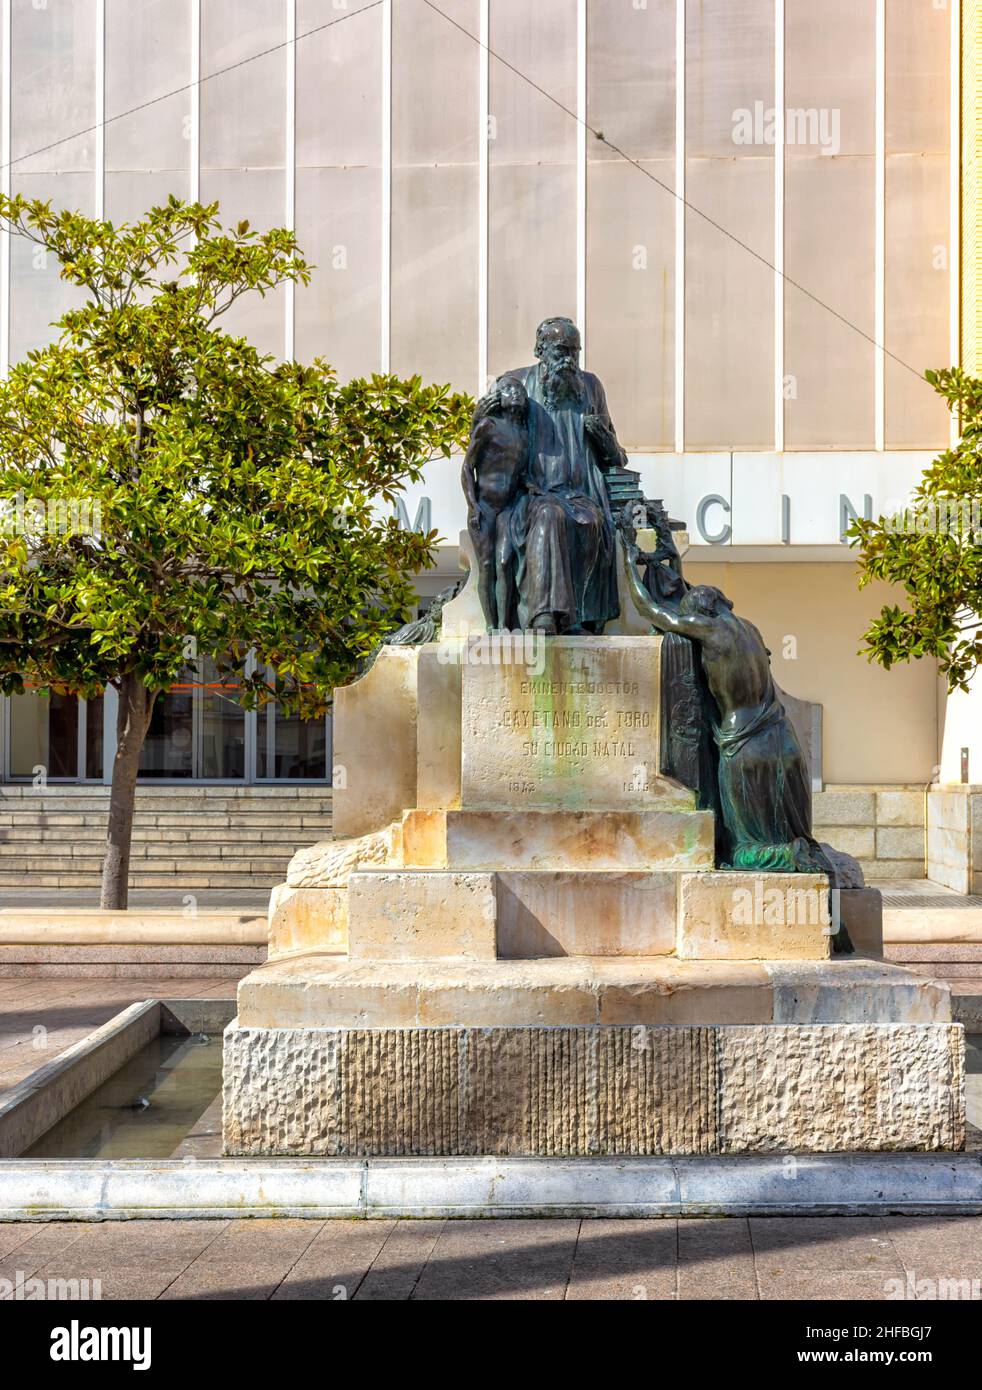 Monumento en homenaje a Cayetano del Toro en Cádiz, España Stock Photo